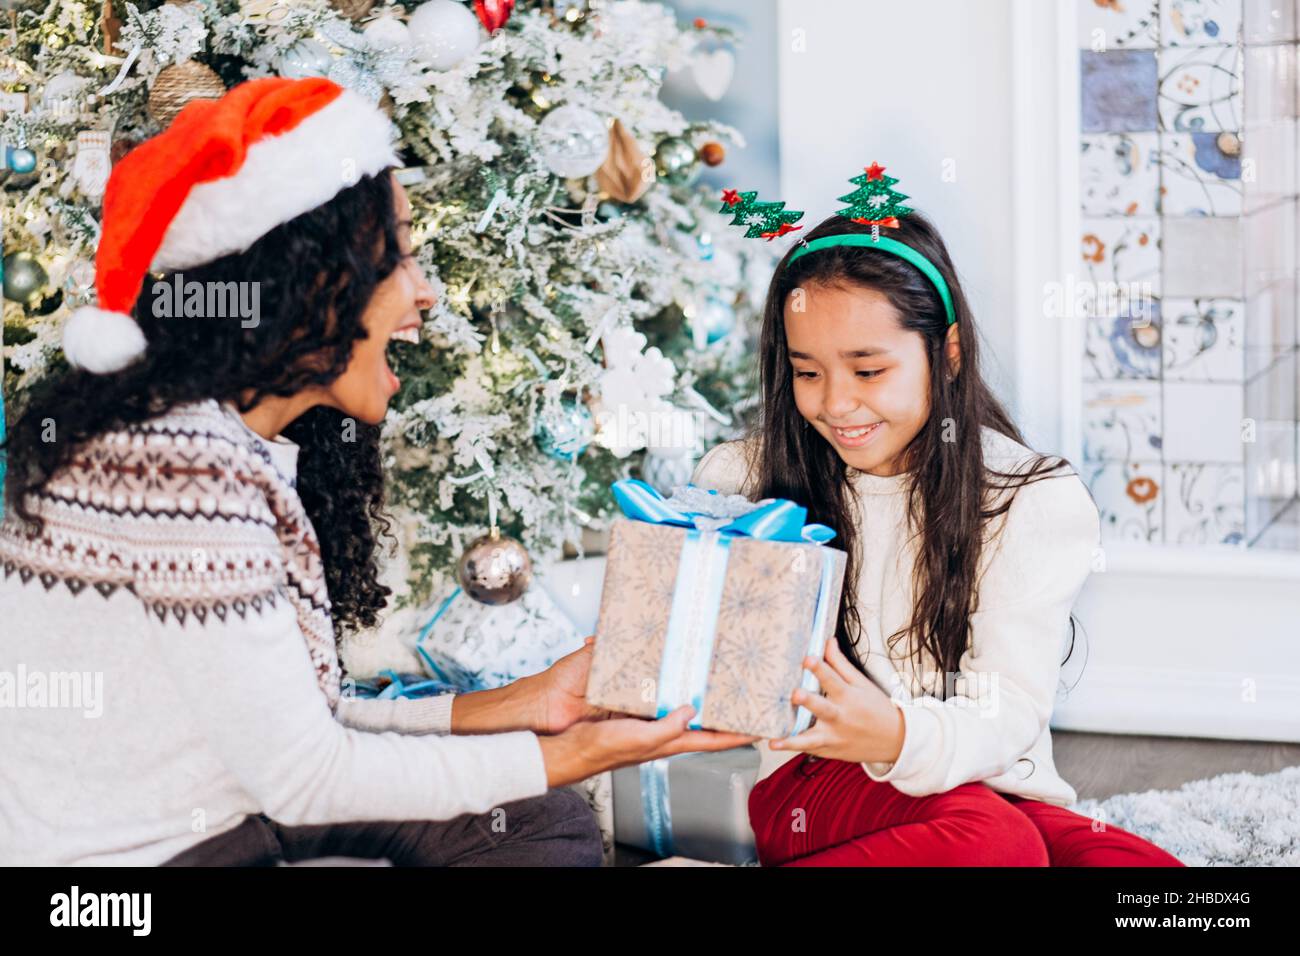 Rizado de pelo largo africano americano madre y la hija morena sentarse en la alfombra y abrir regalos festivos sonriendo feliz cerca del árbol de Navidad Foto de stock